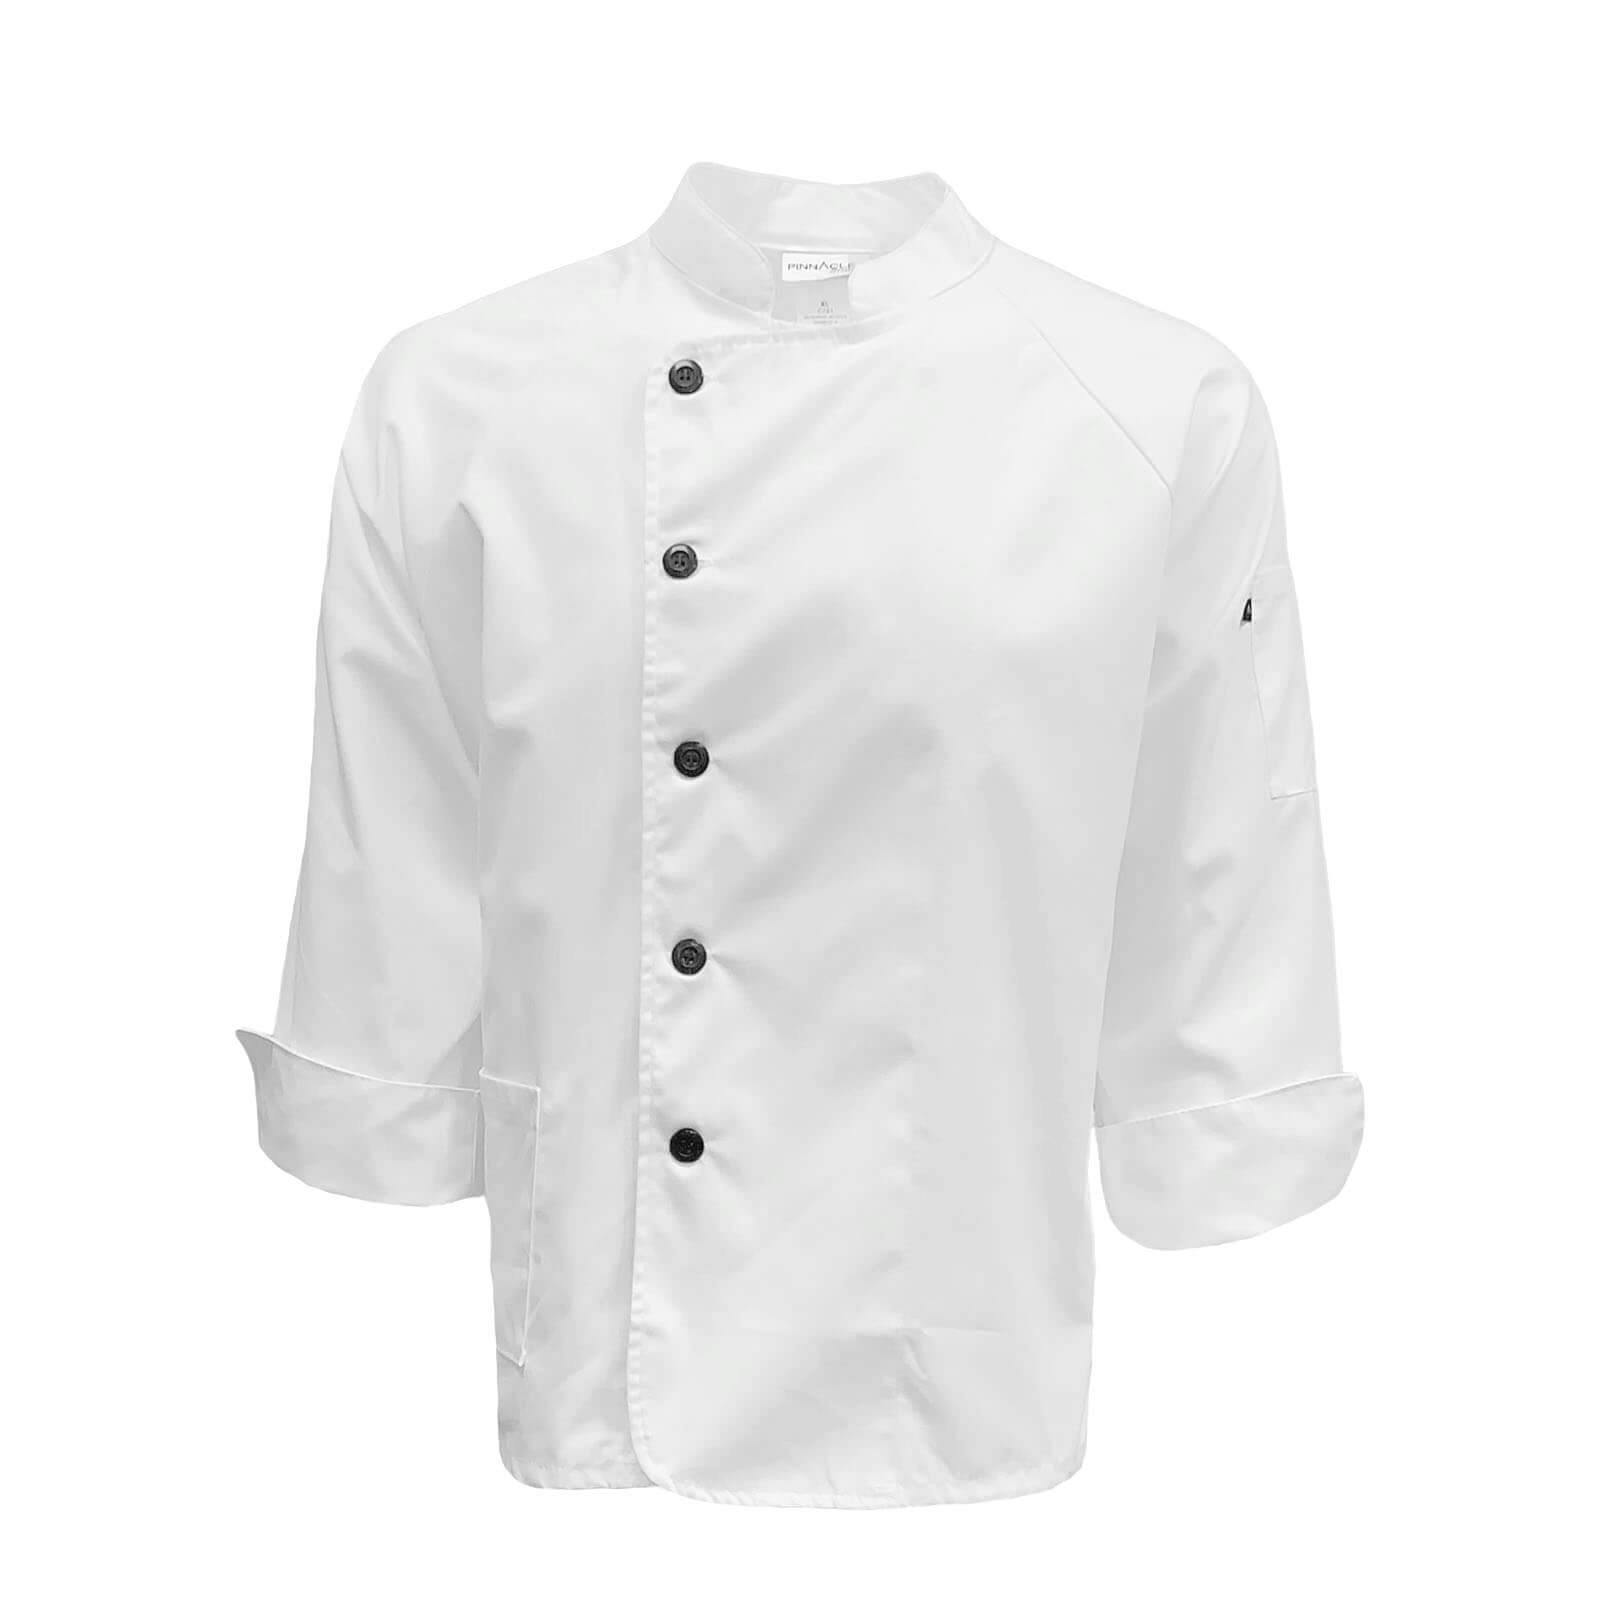 Pinnacle Ring Spun Twill Server/Waiter Chef Jacket